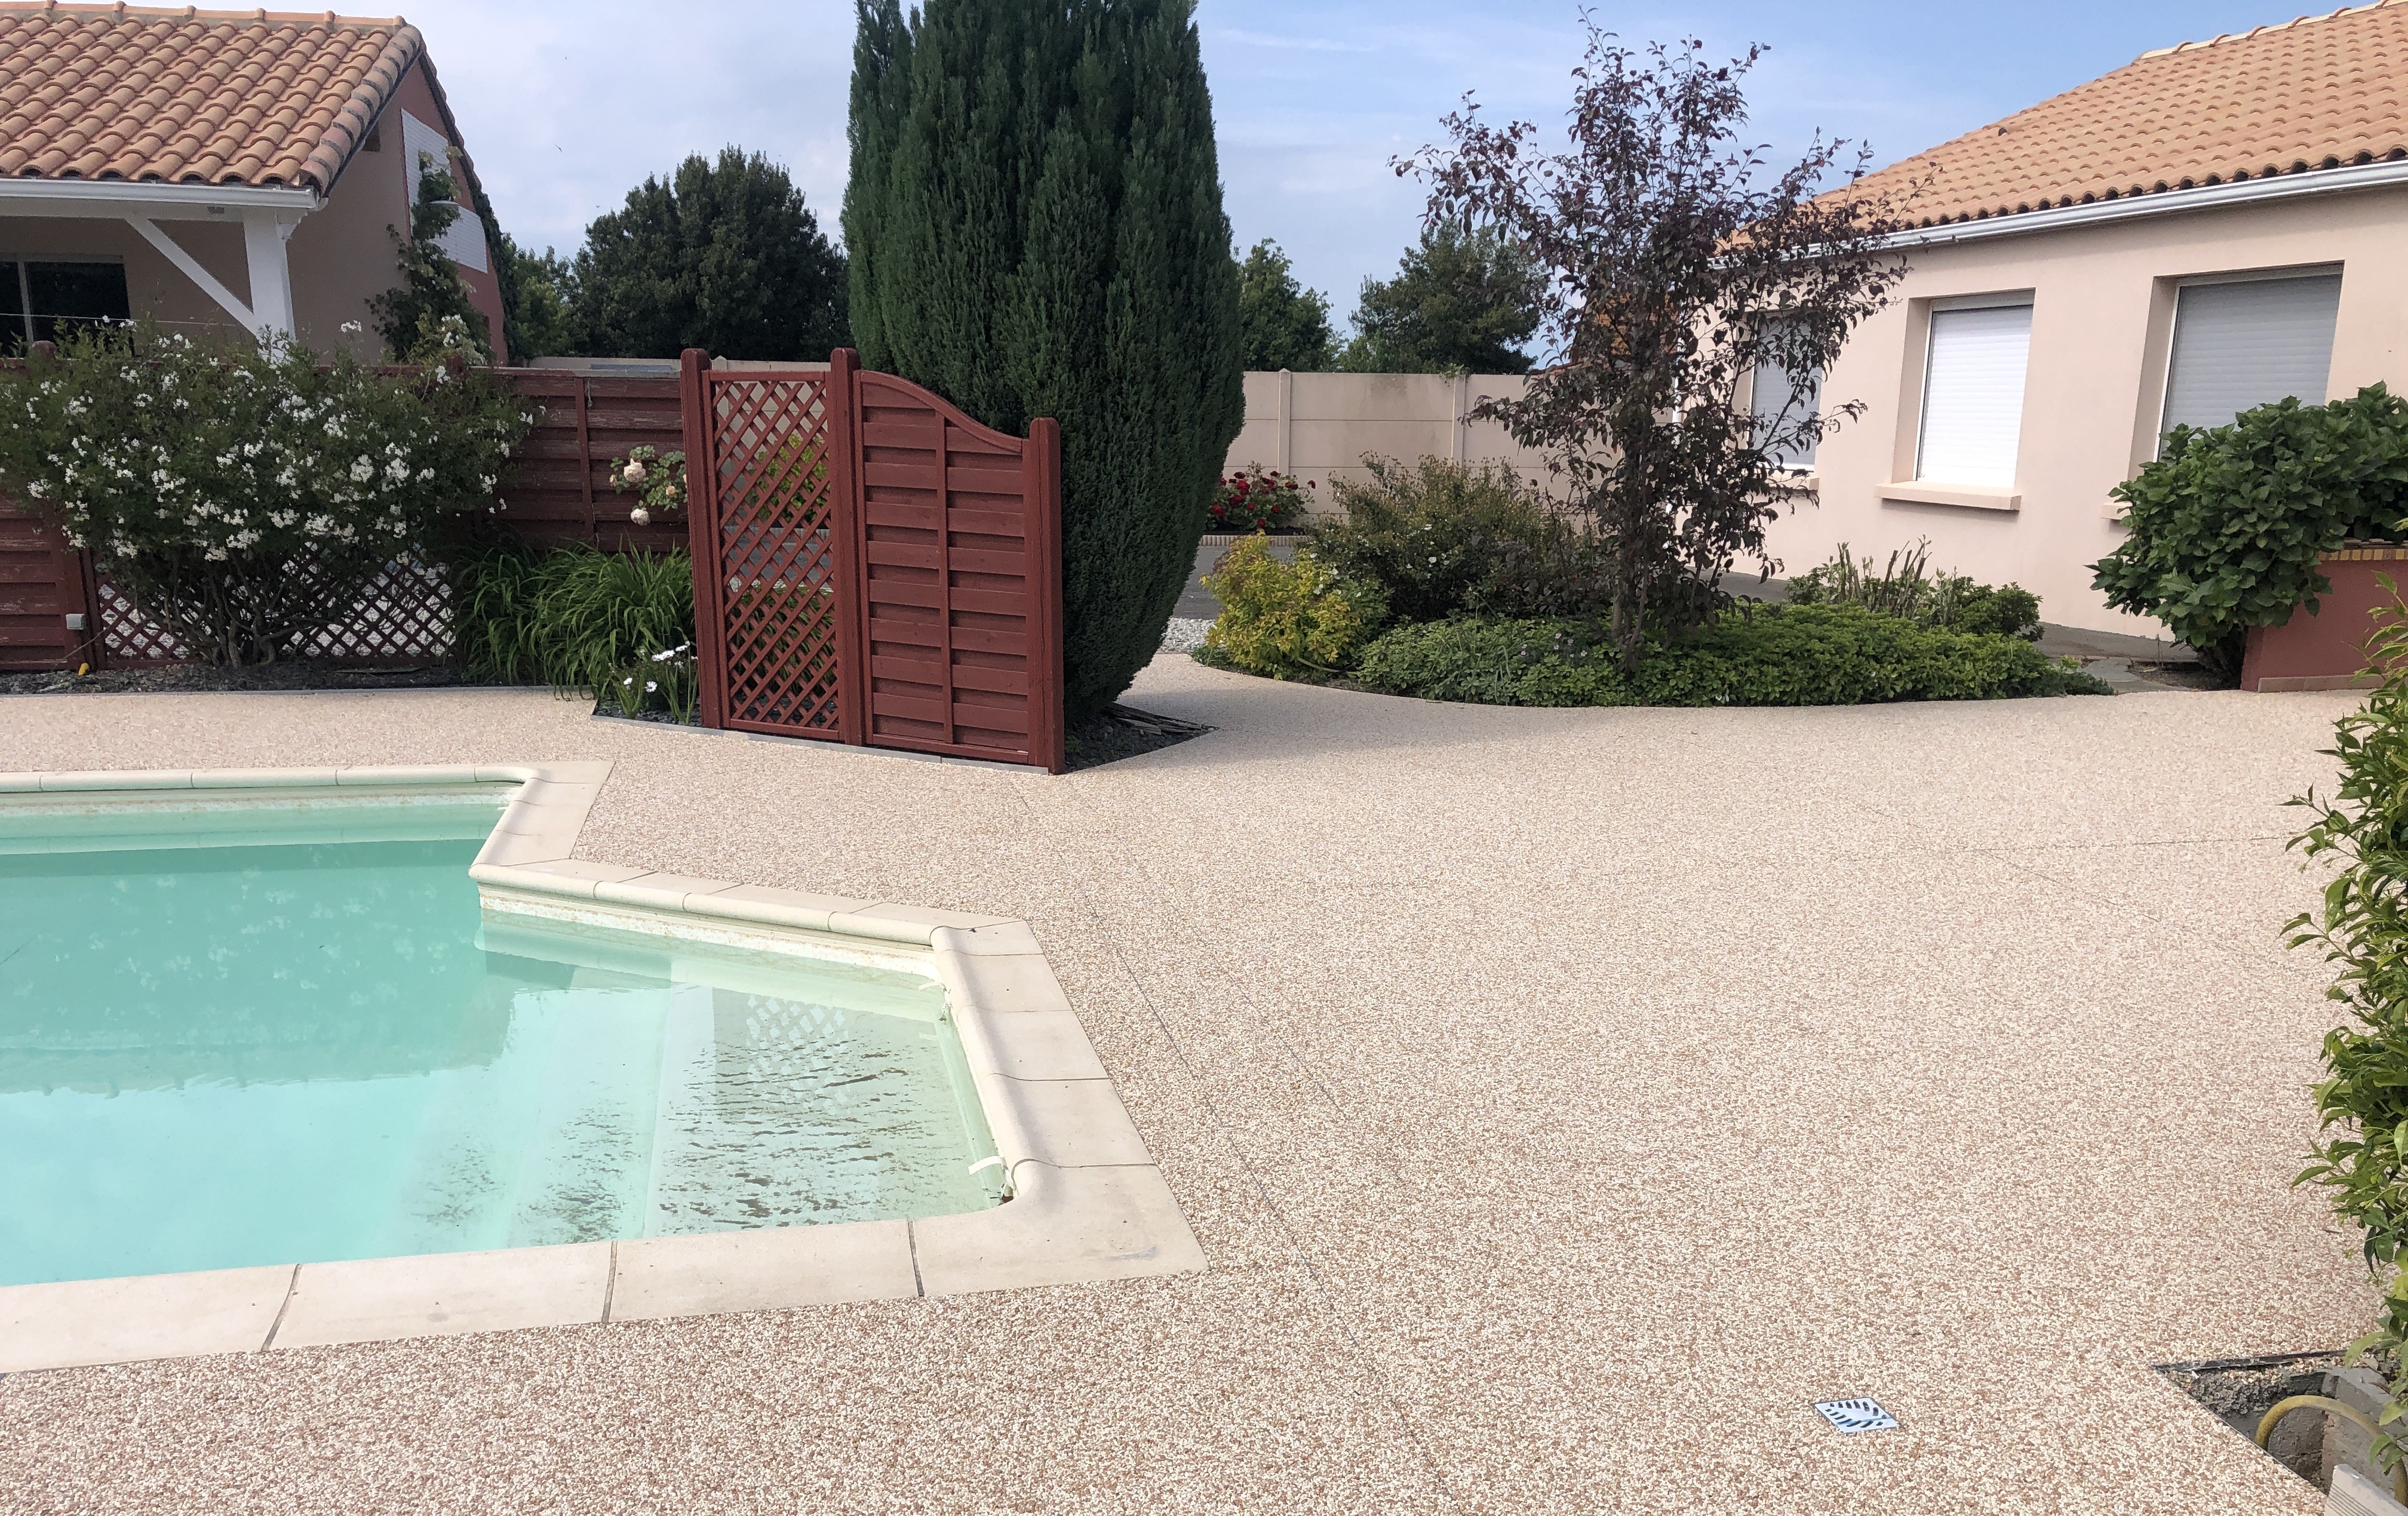 Cration Plage de piscine en Hydrostar  - Loire Atlantique conue le 27/05/2019